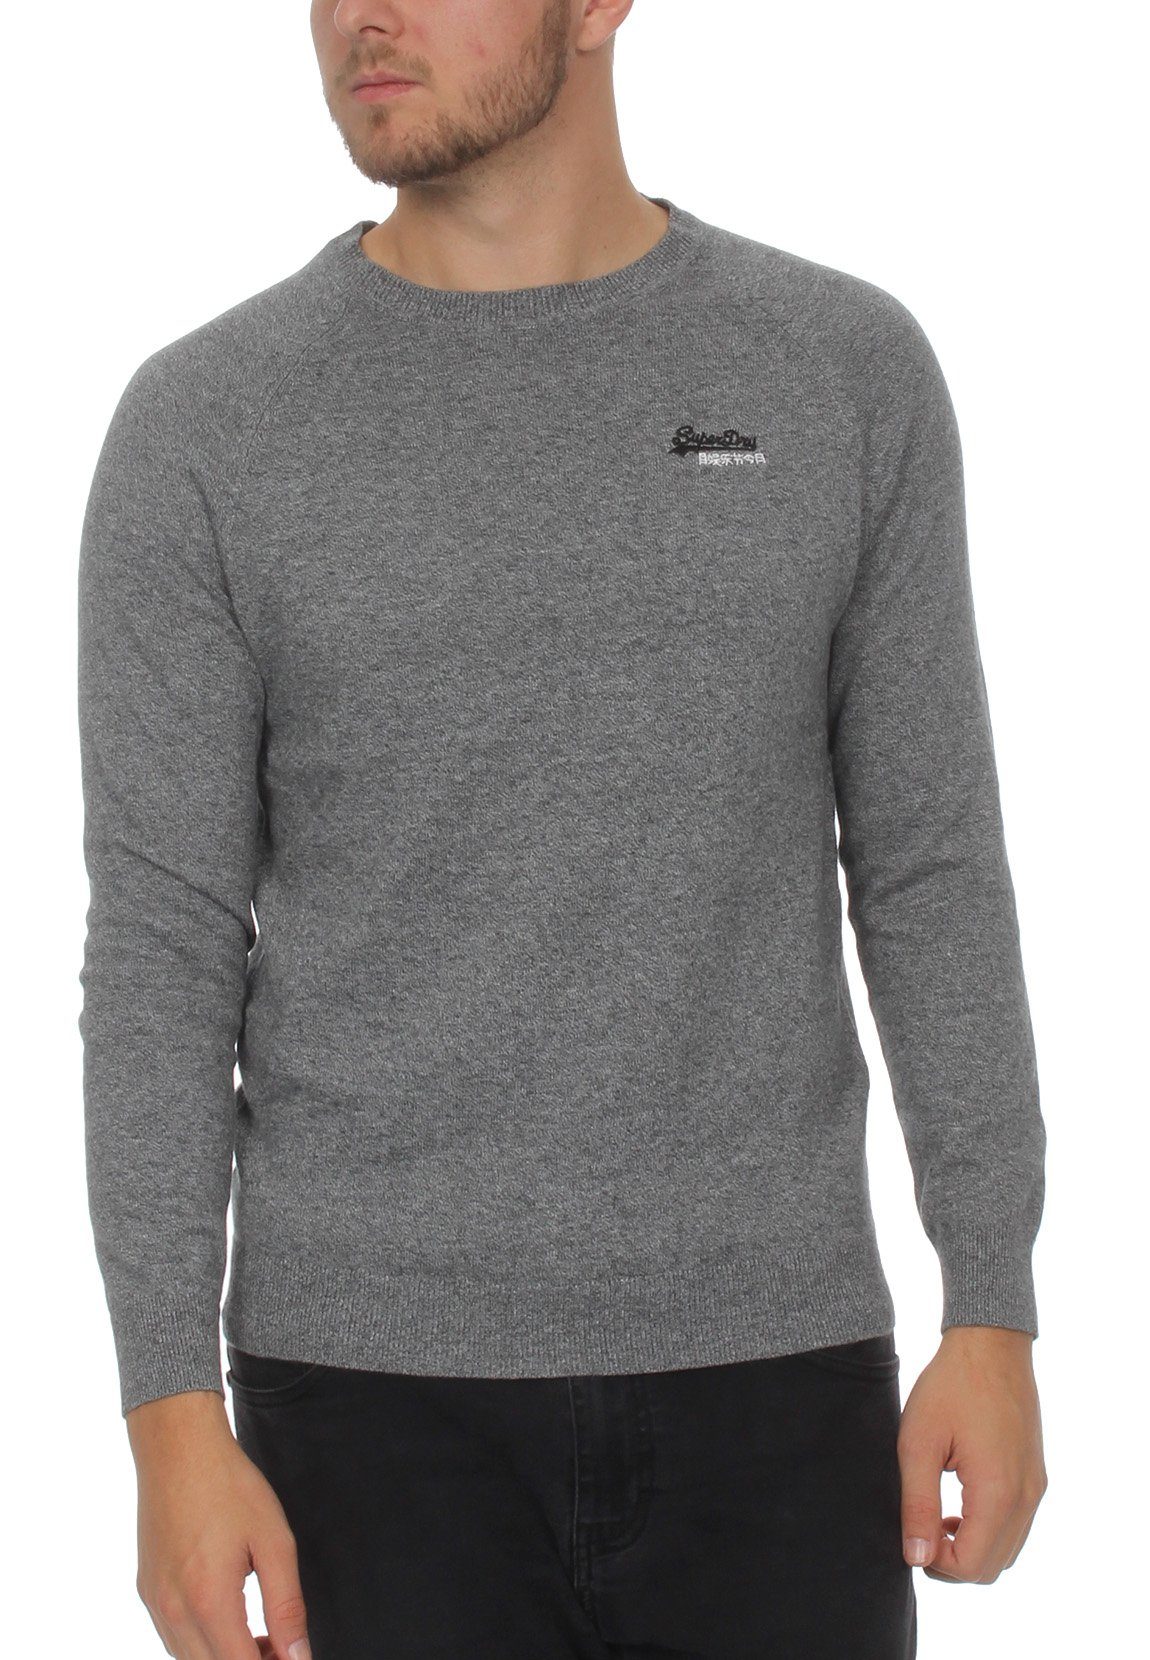 Superdry Sweatshirt »Superdry Pullover Herren ORANGE LABEL COTTON CREW Ash  Grey Grit« online kaufen | OTTO